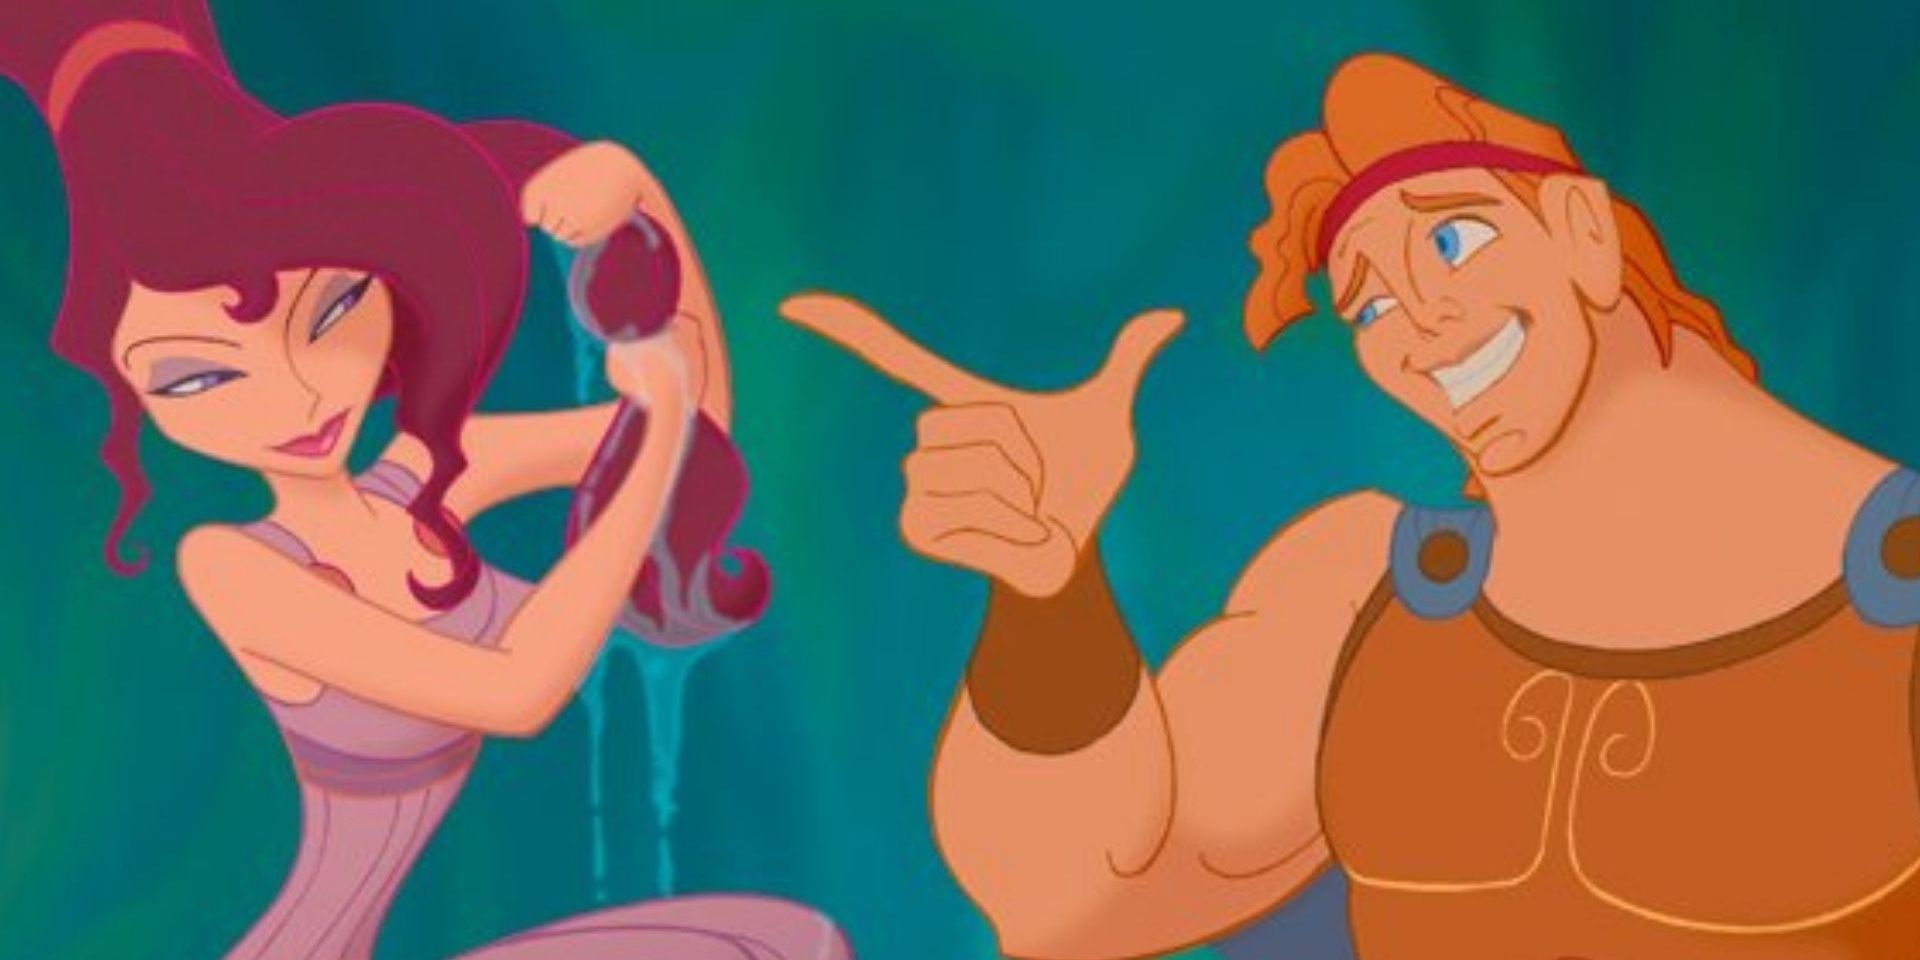 Hércules señala a Megara mientras ella se exprime el agua del cabello.